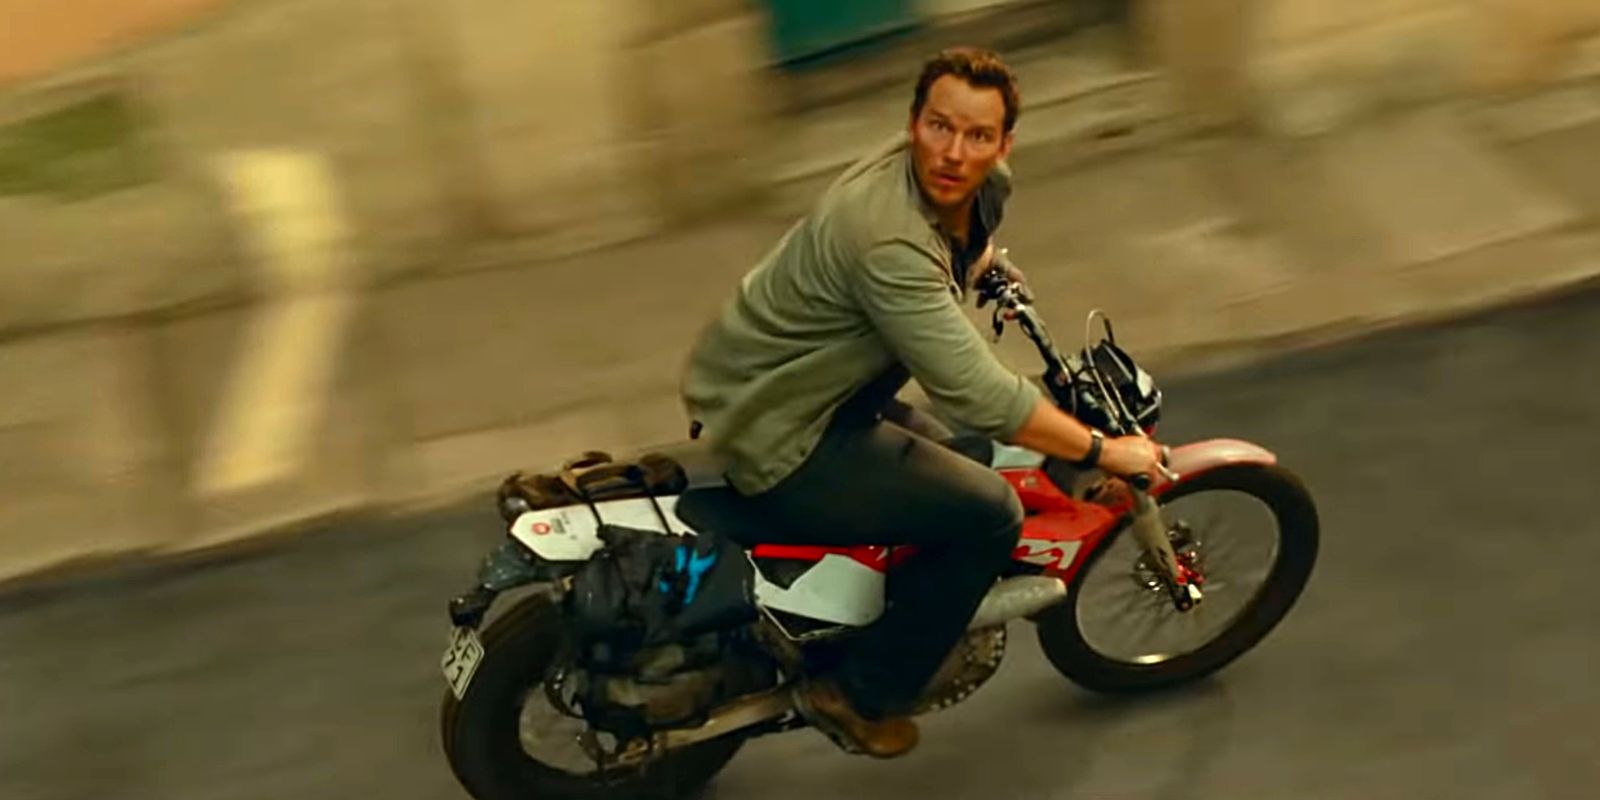 Chris Pratt on bike in movie